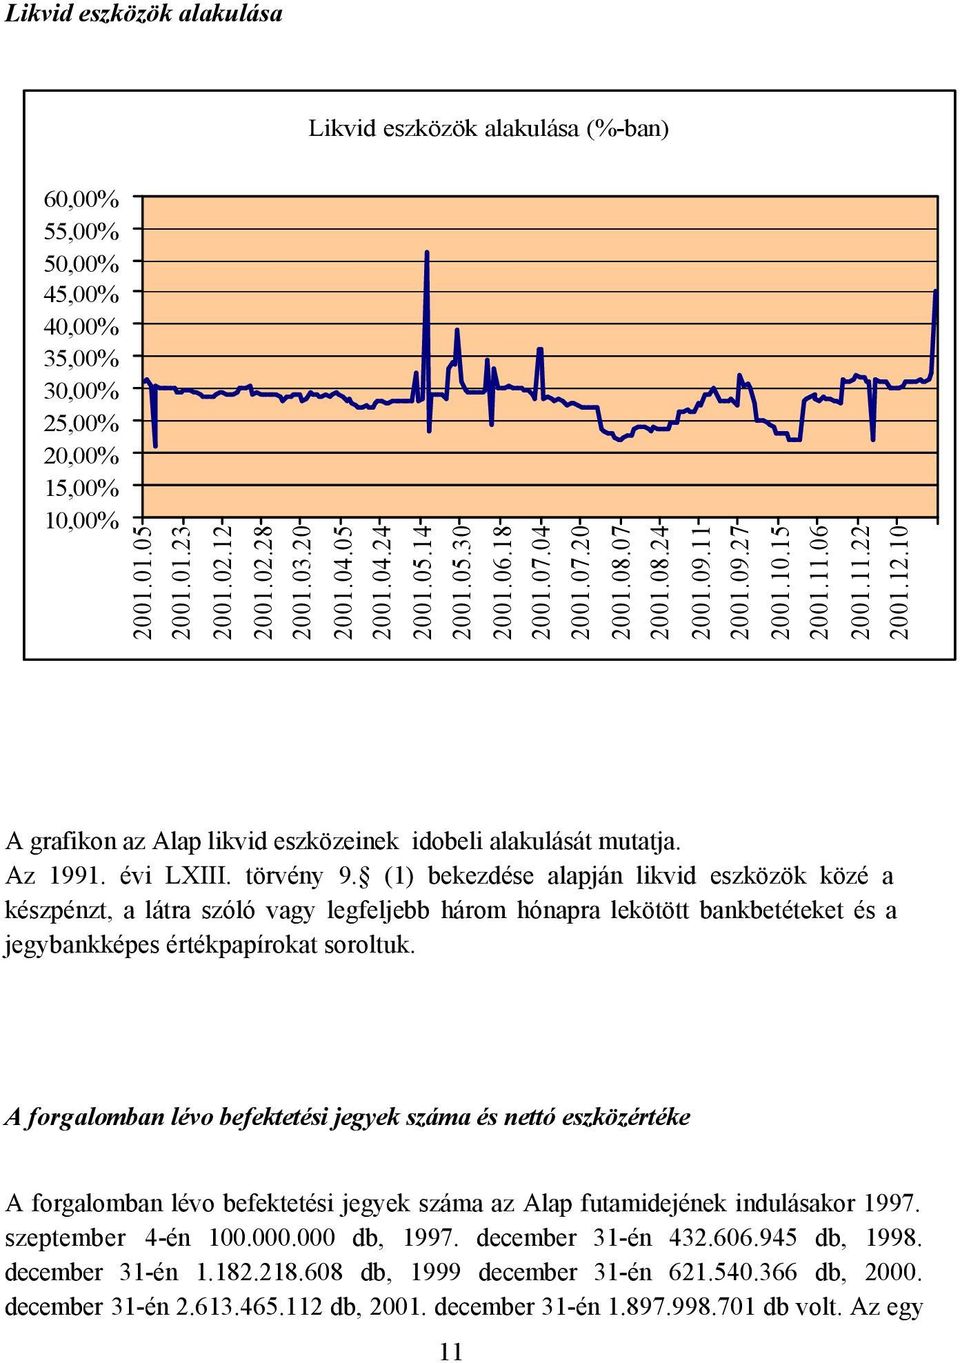 10 A grafikon az Alap likvid eszközeinek idobeli alakulását mutatja. Az 1991. évi LXIII. törvény 9.